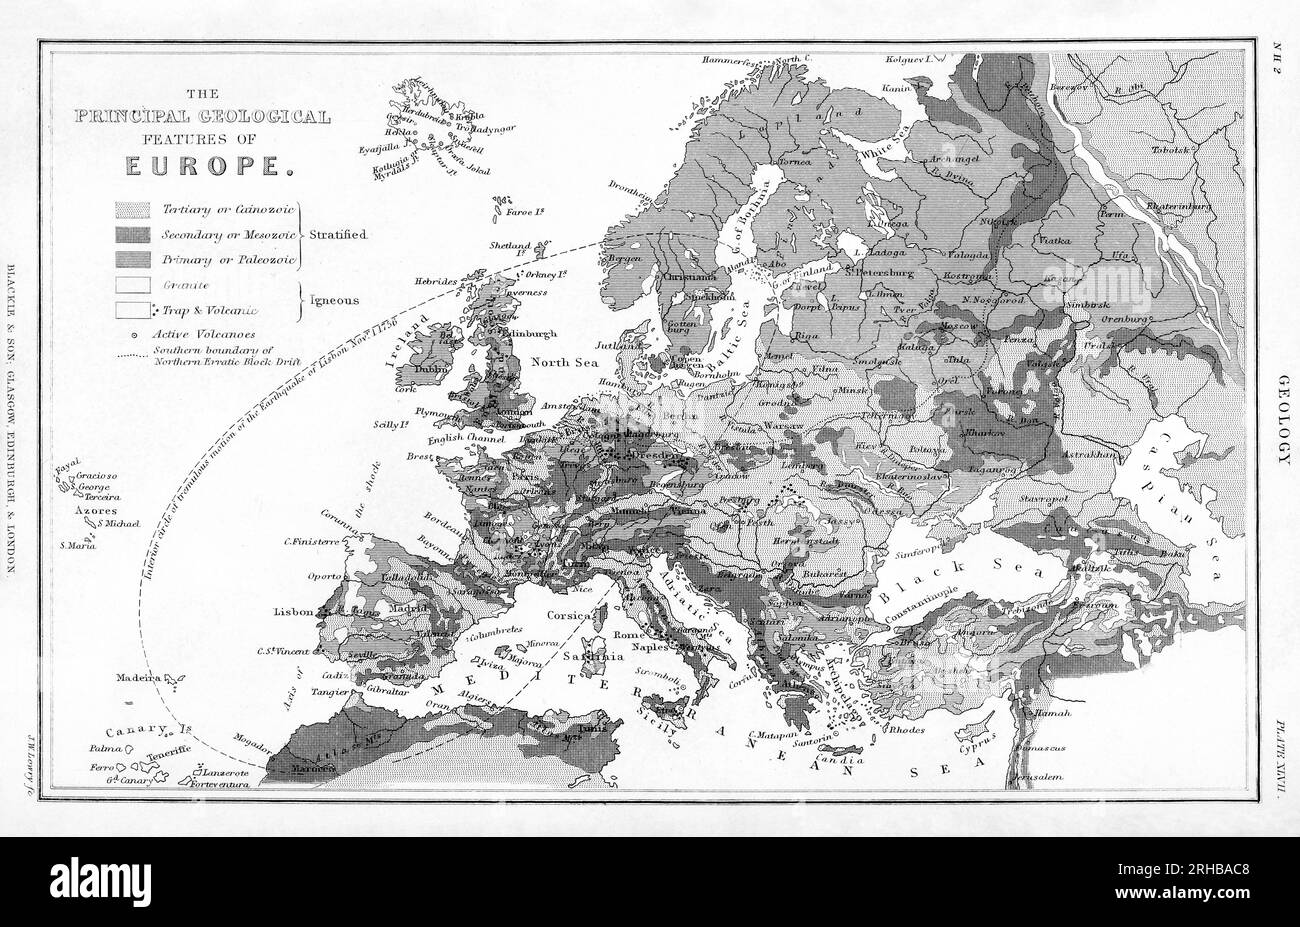 Geologia, le caratteristiche principali dell'Europa geologica. Arricchito digitalmente dalla nostra edizione originale di Una storia della terra e della natura animata Foto Stock